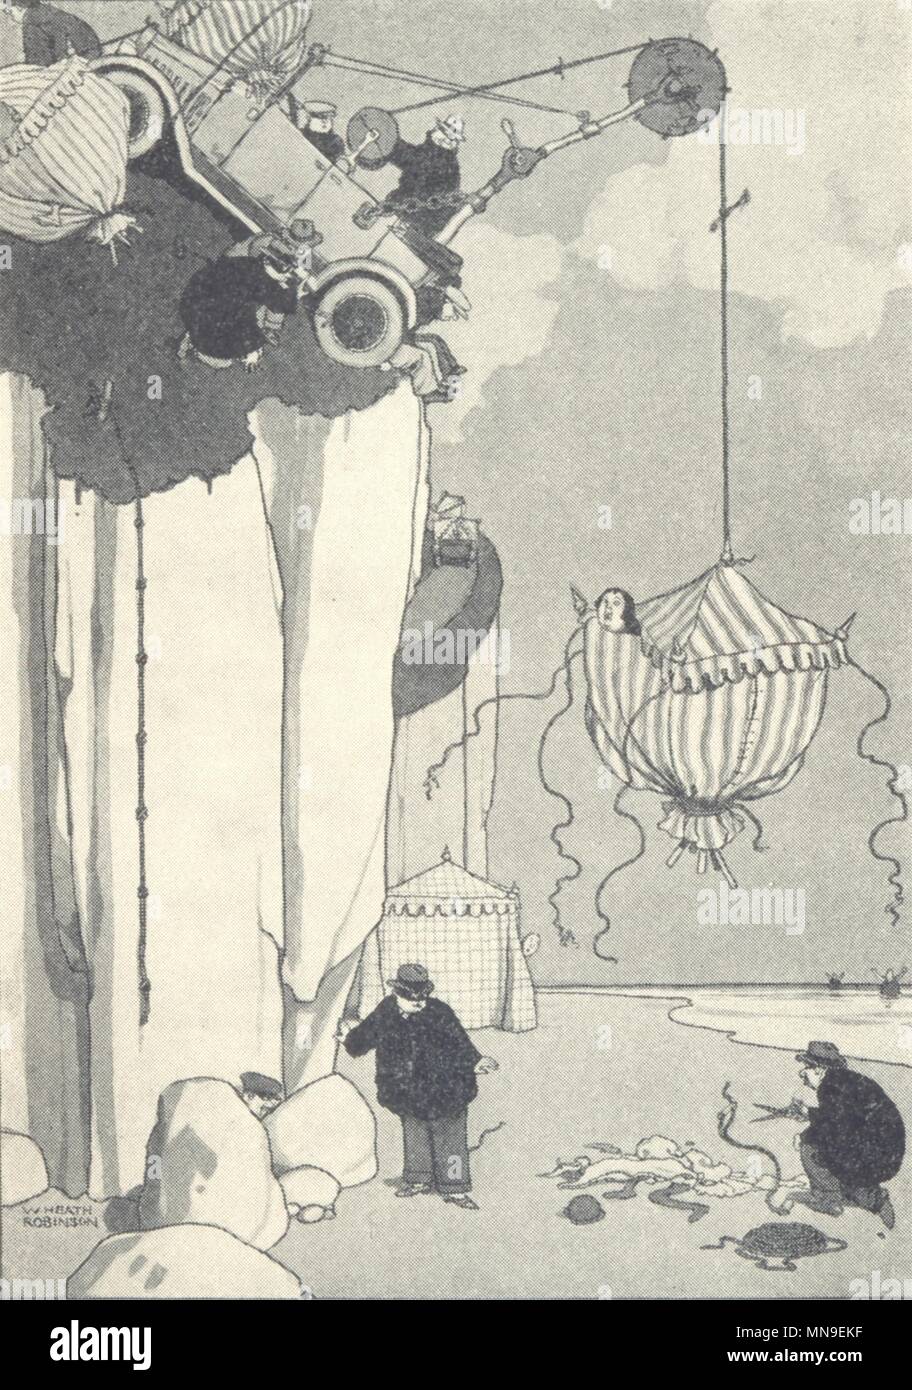 HEATH Robinson. Motore banditi rapimento bellezze di balneazione Boulogne. Piccola 1935 Foto Stock